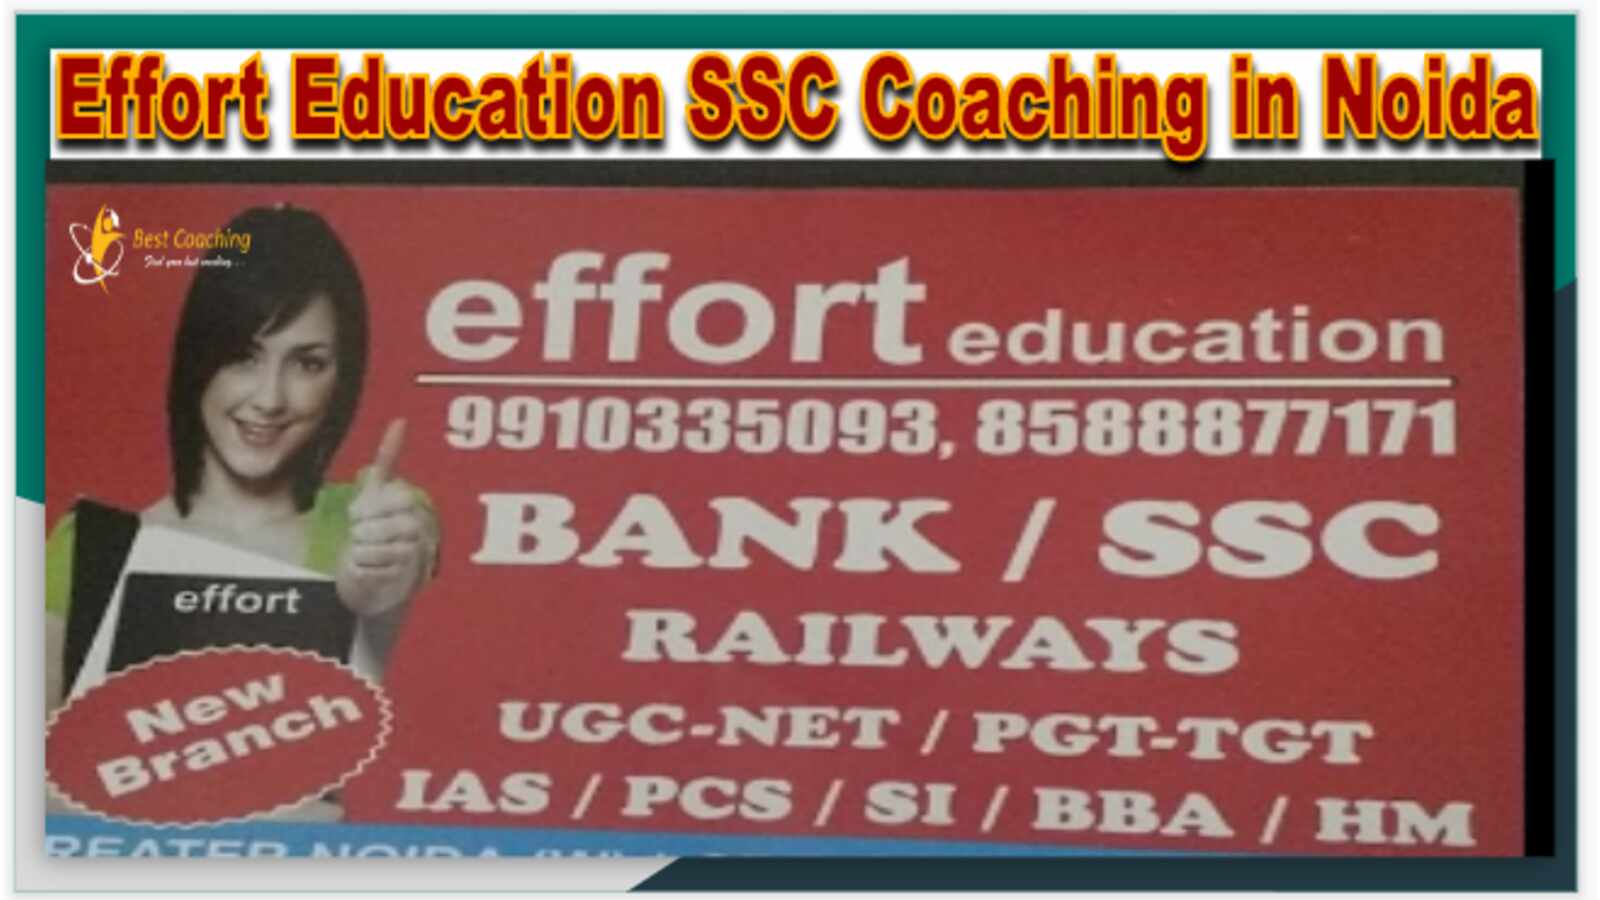 https://www.bestcoaching.app/wp-content/uploads/2022/11/Effort-Education-SSC-Coaching-in-Noida.jpg